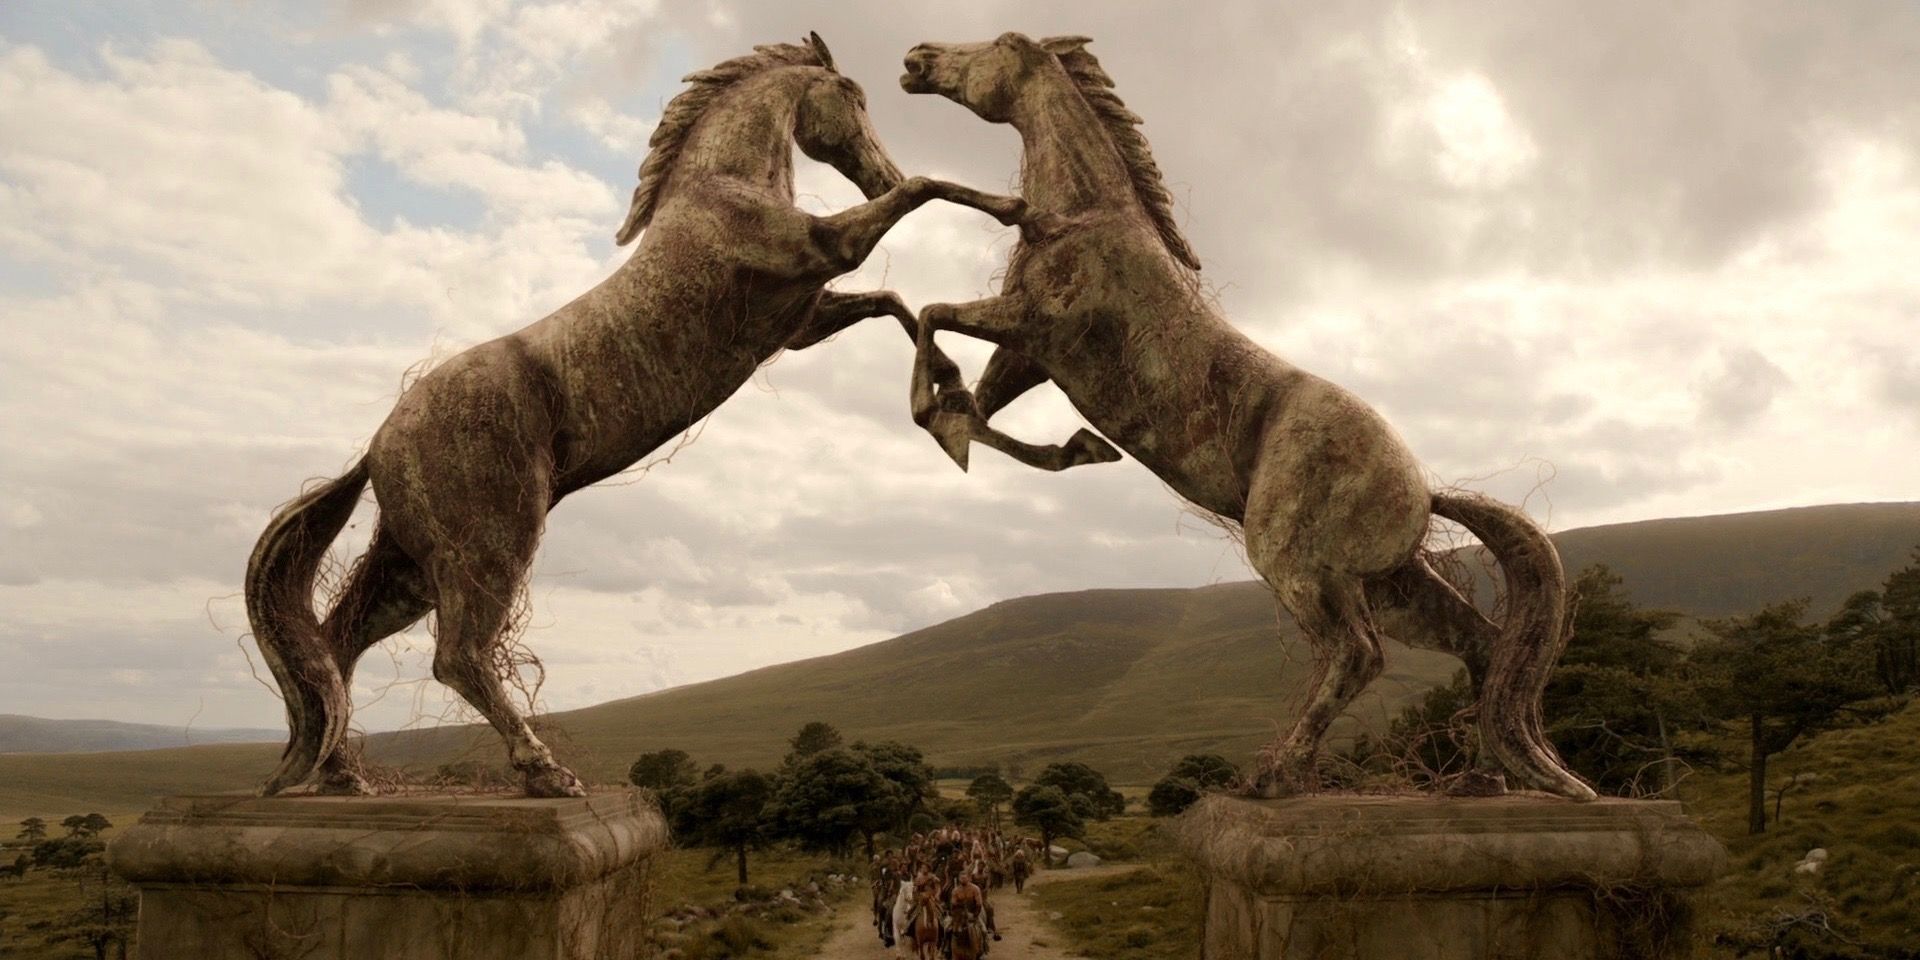 De ingang van de stad Vaes Dothrak in Game of Thrones.